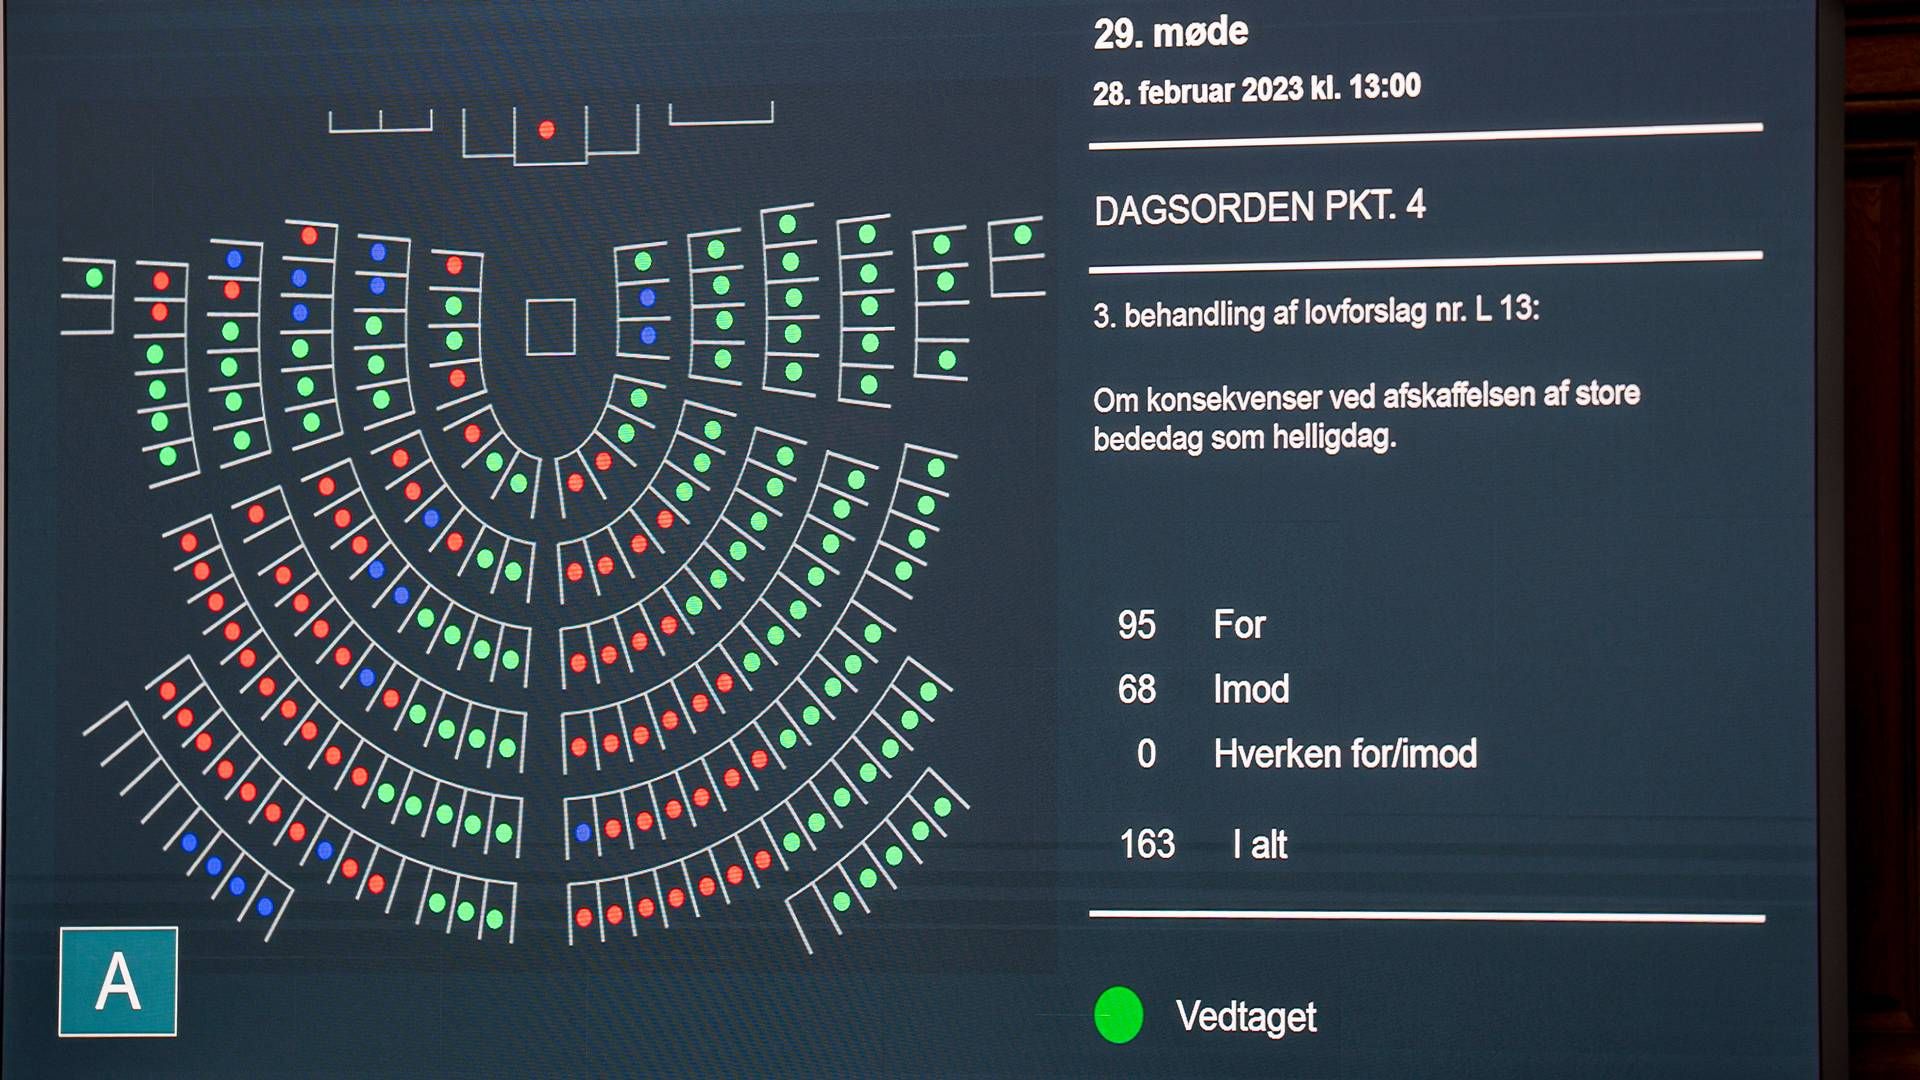 163 folketingsmedlemmer stemte, da store bededag blev afskaffet som en fridag tirsdag. | Foto: Liselotte Sabroe/Ritzau Scanpix